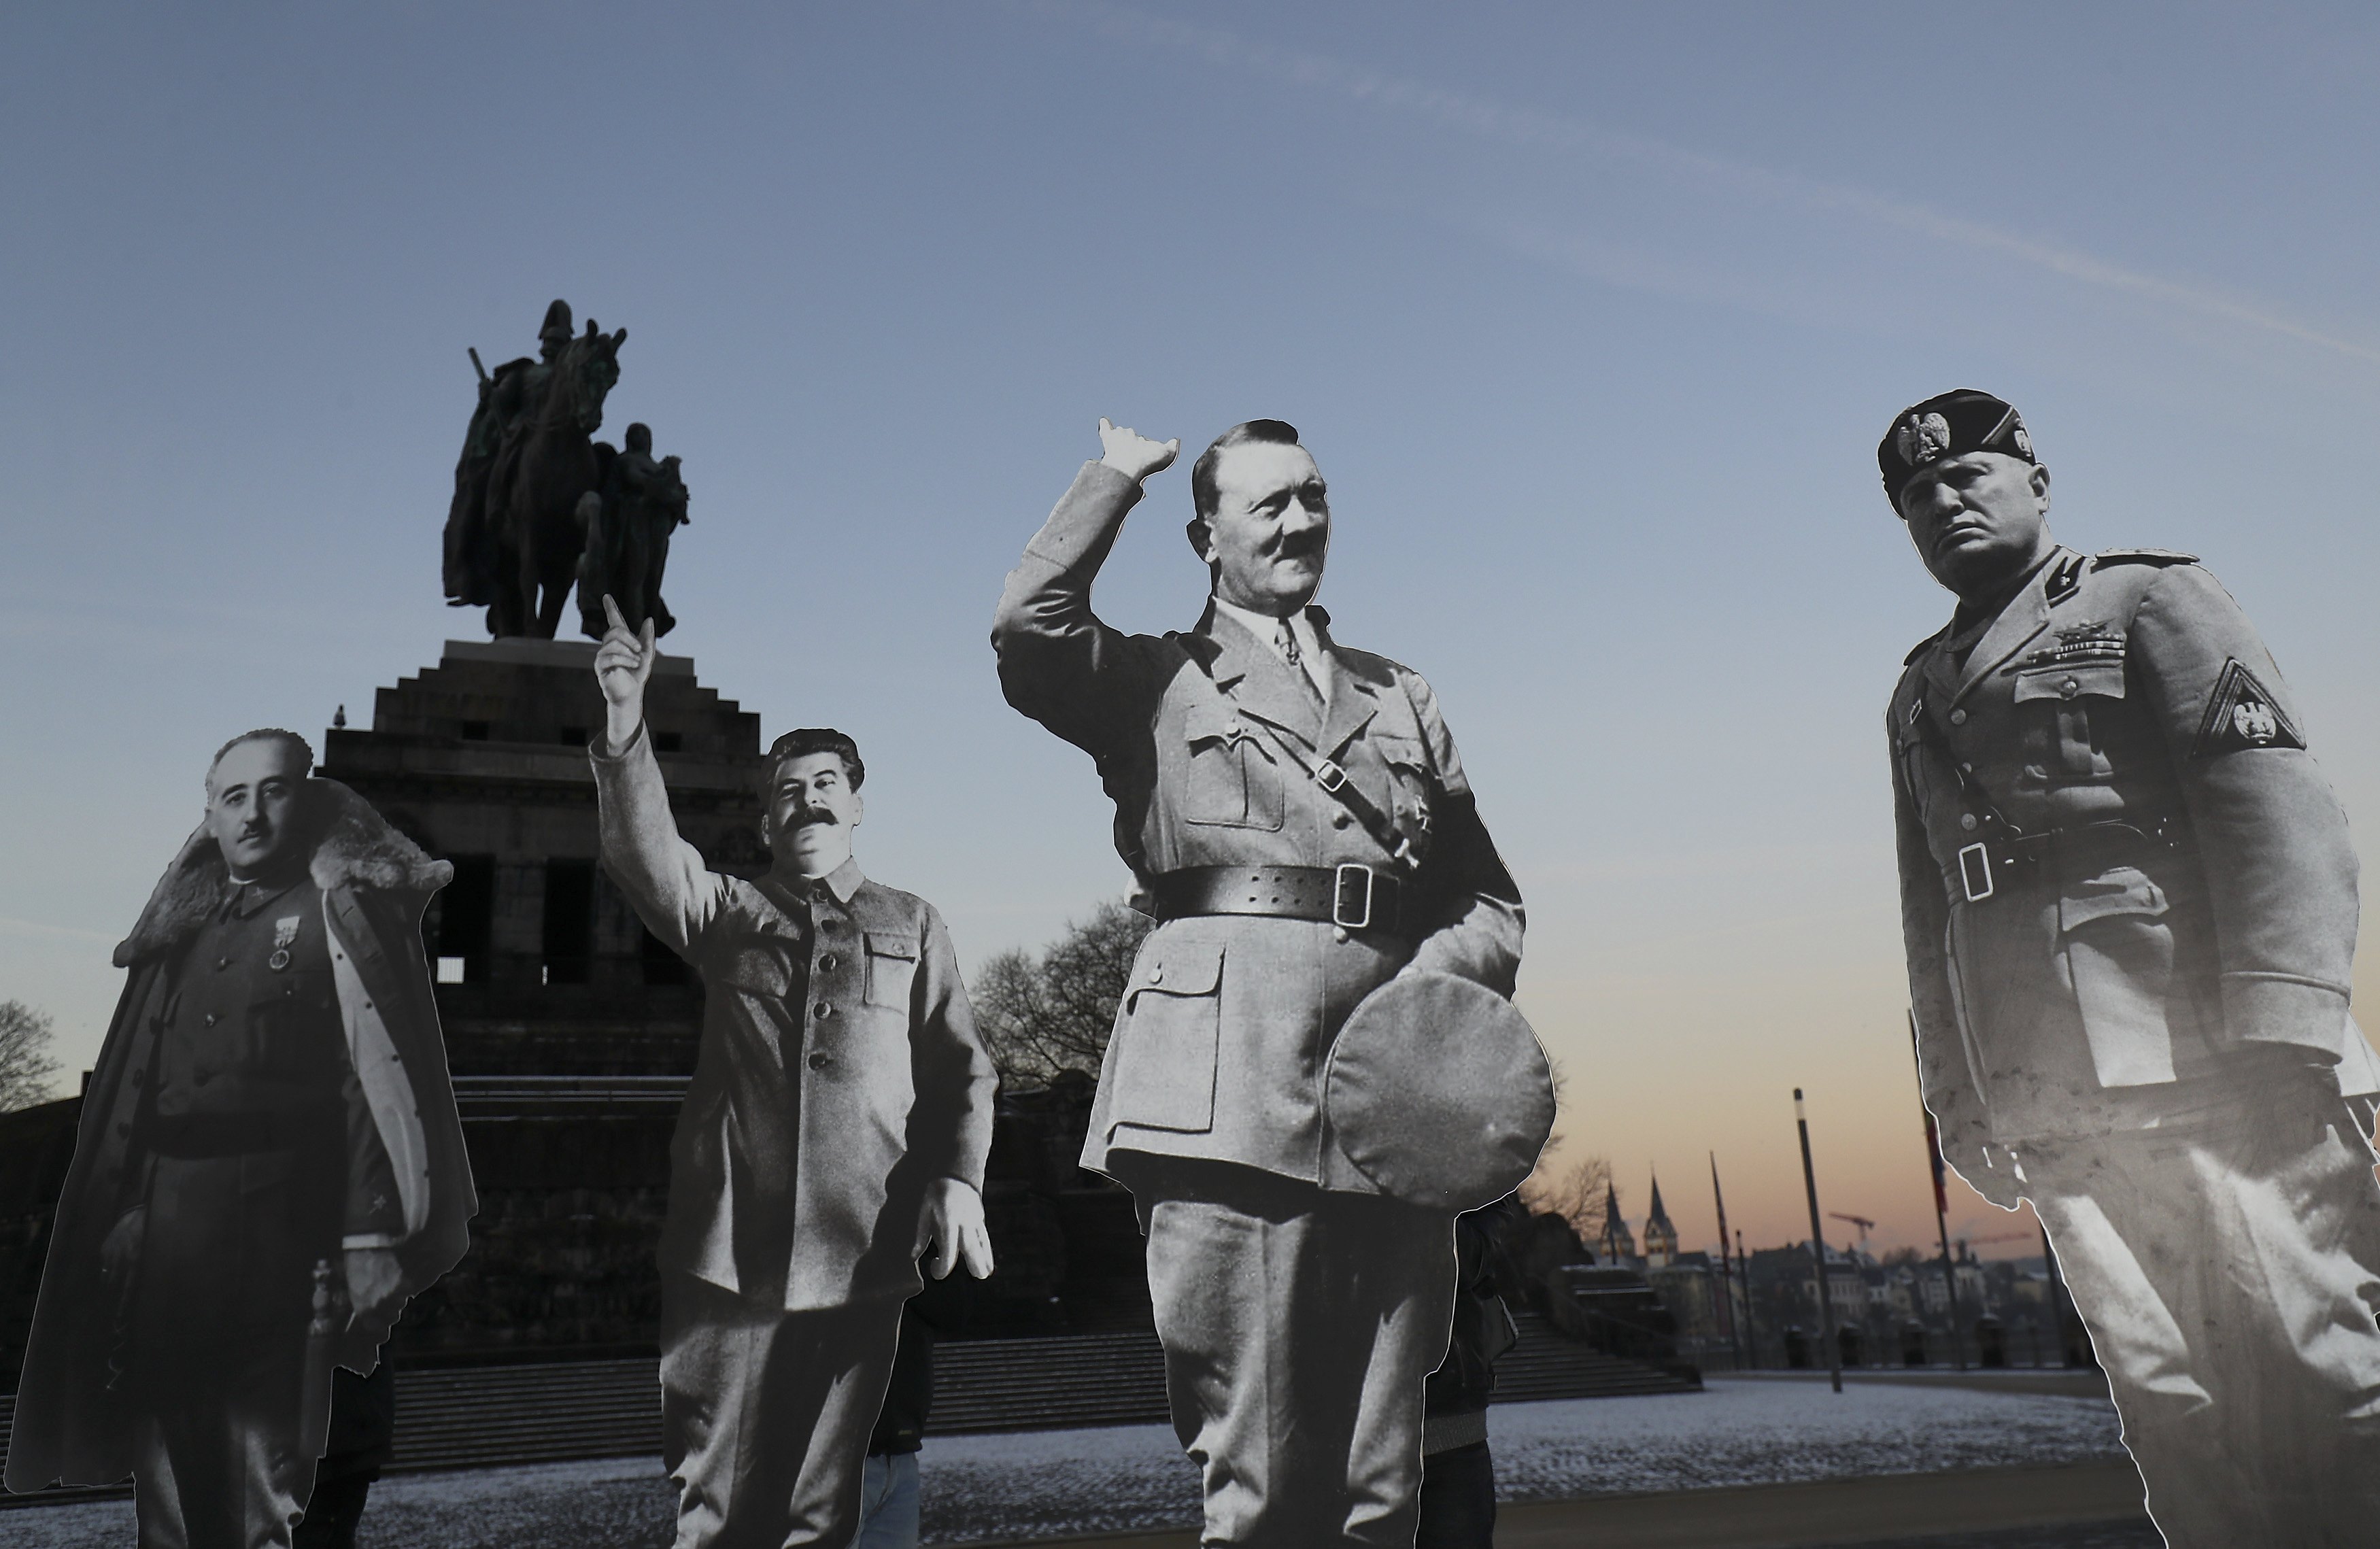 مجسمات كرتونية بالحجم الطبيعى لأدولف هتلر وجوزيف ستالين يشيران بيديهما